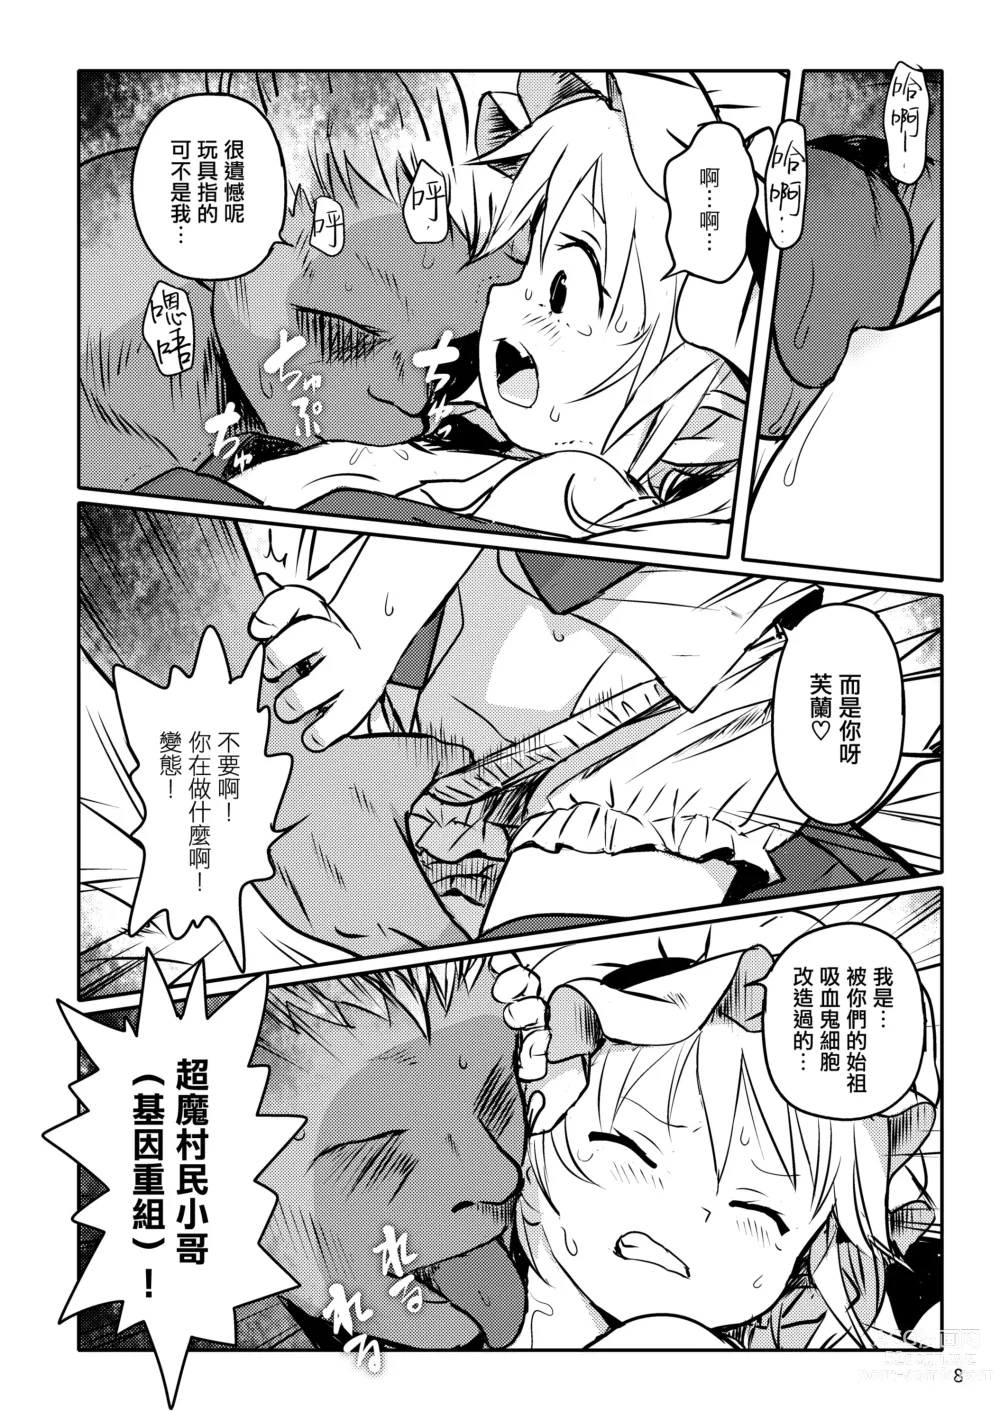 Page 8 of doujinshi 是好孩子吧!芙蘭醬!